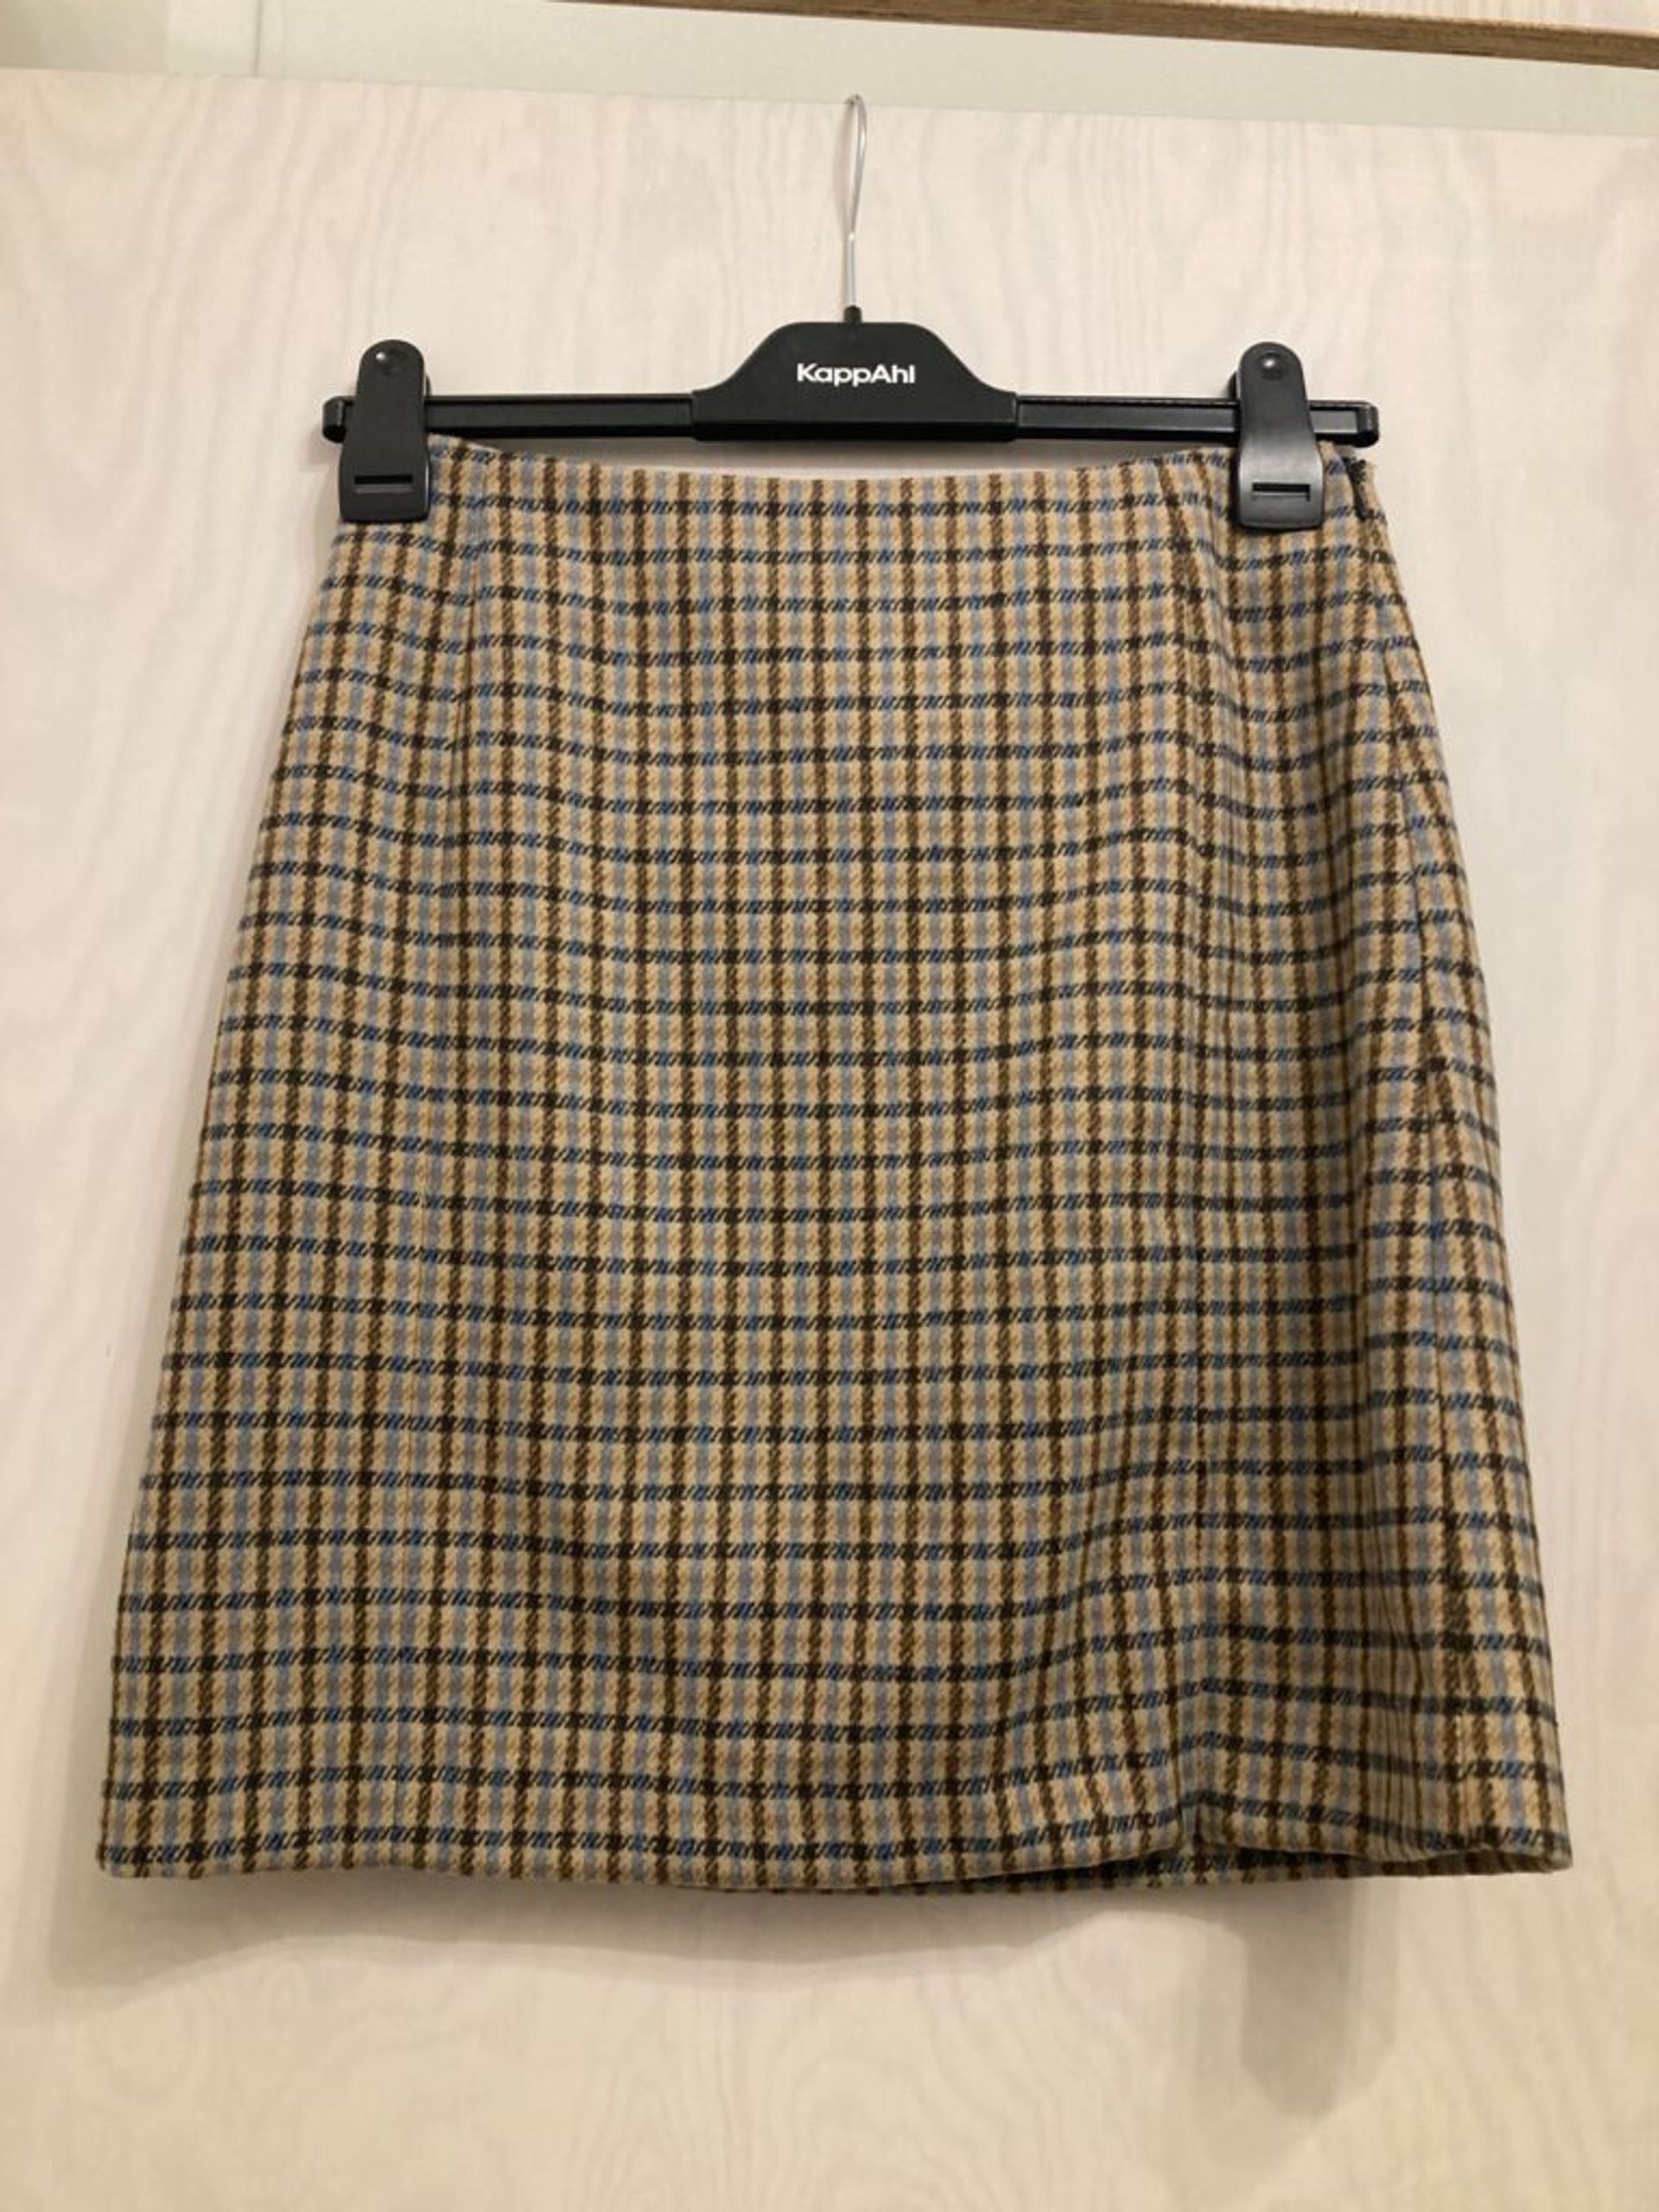 A short skirt.